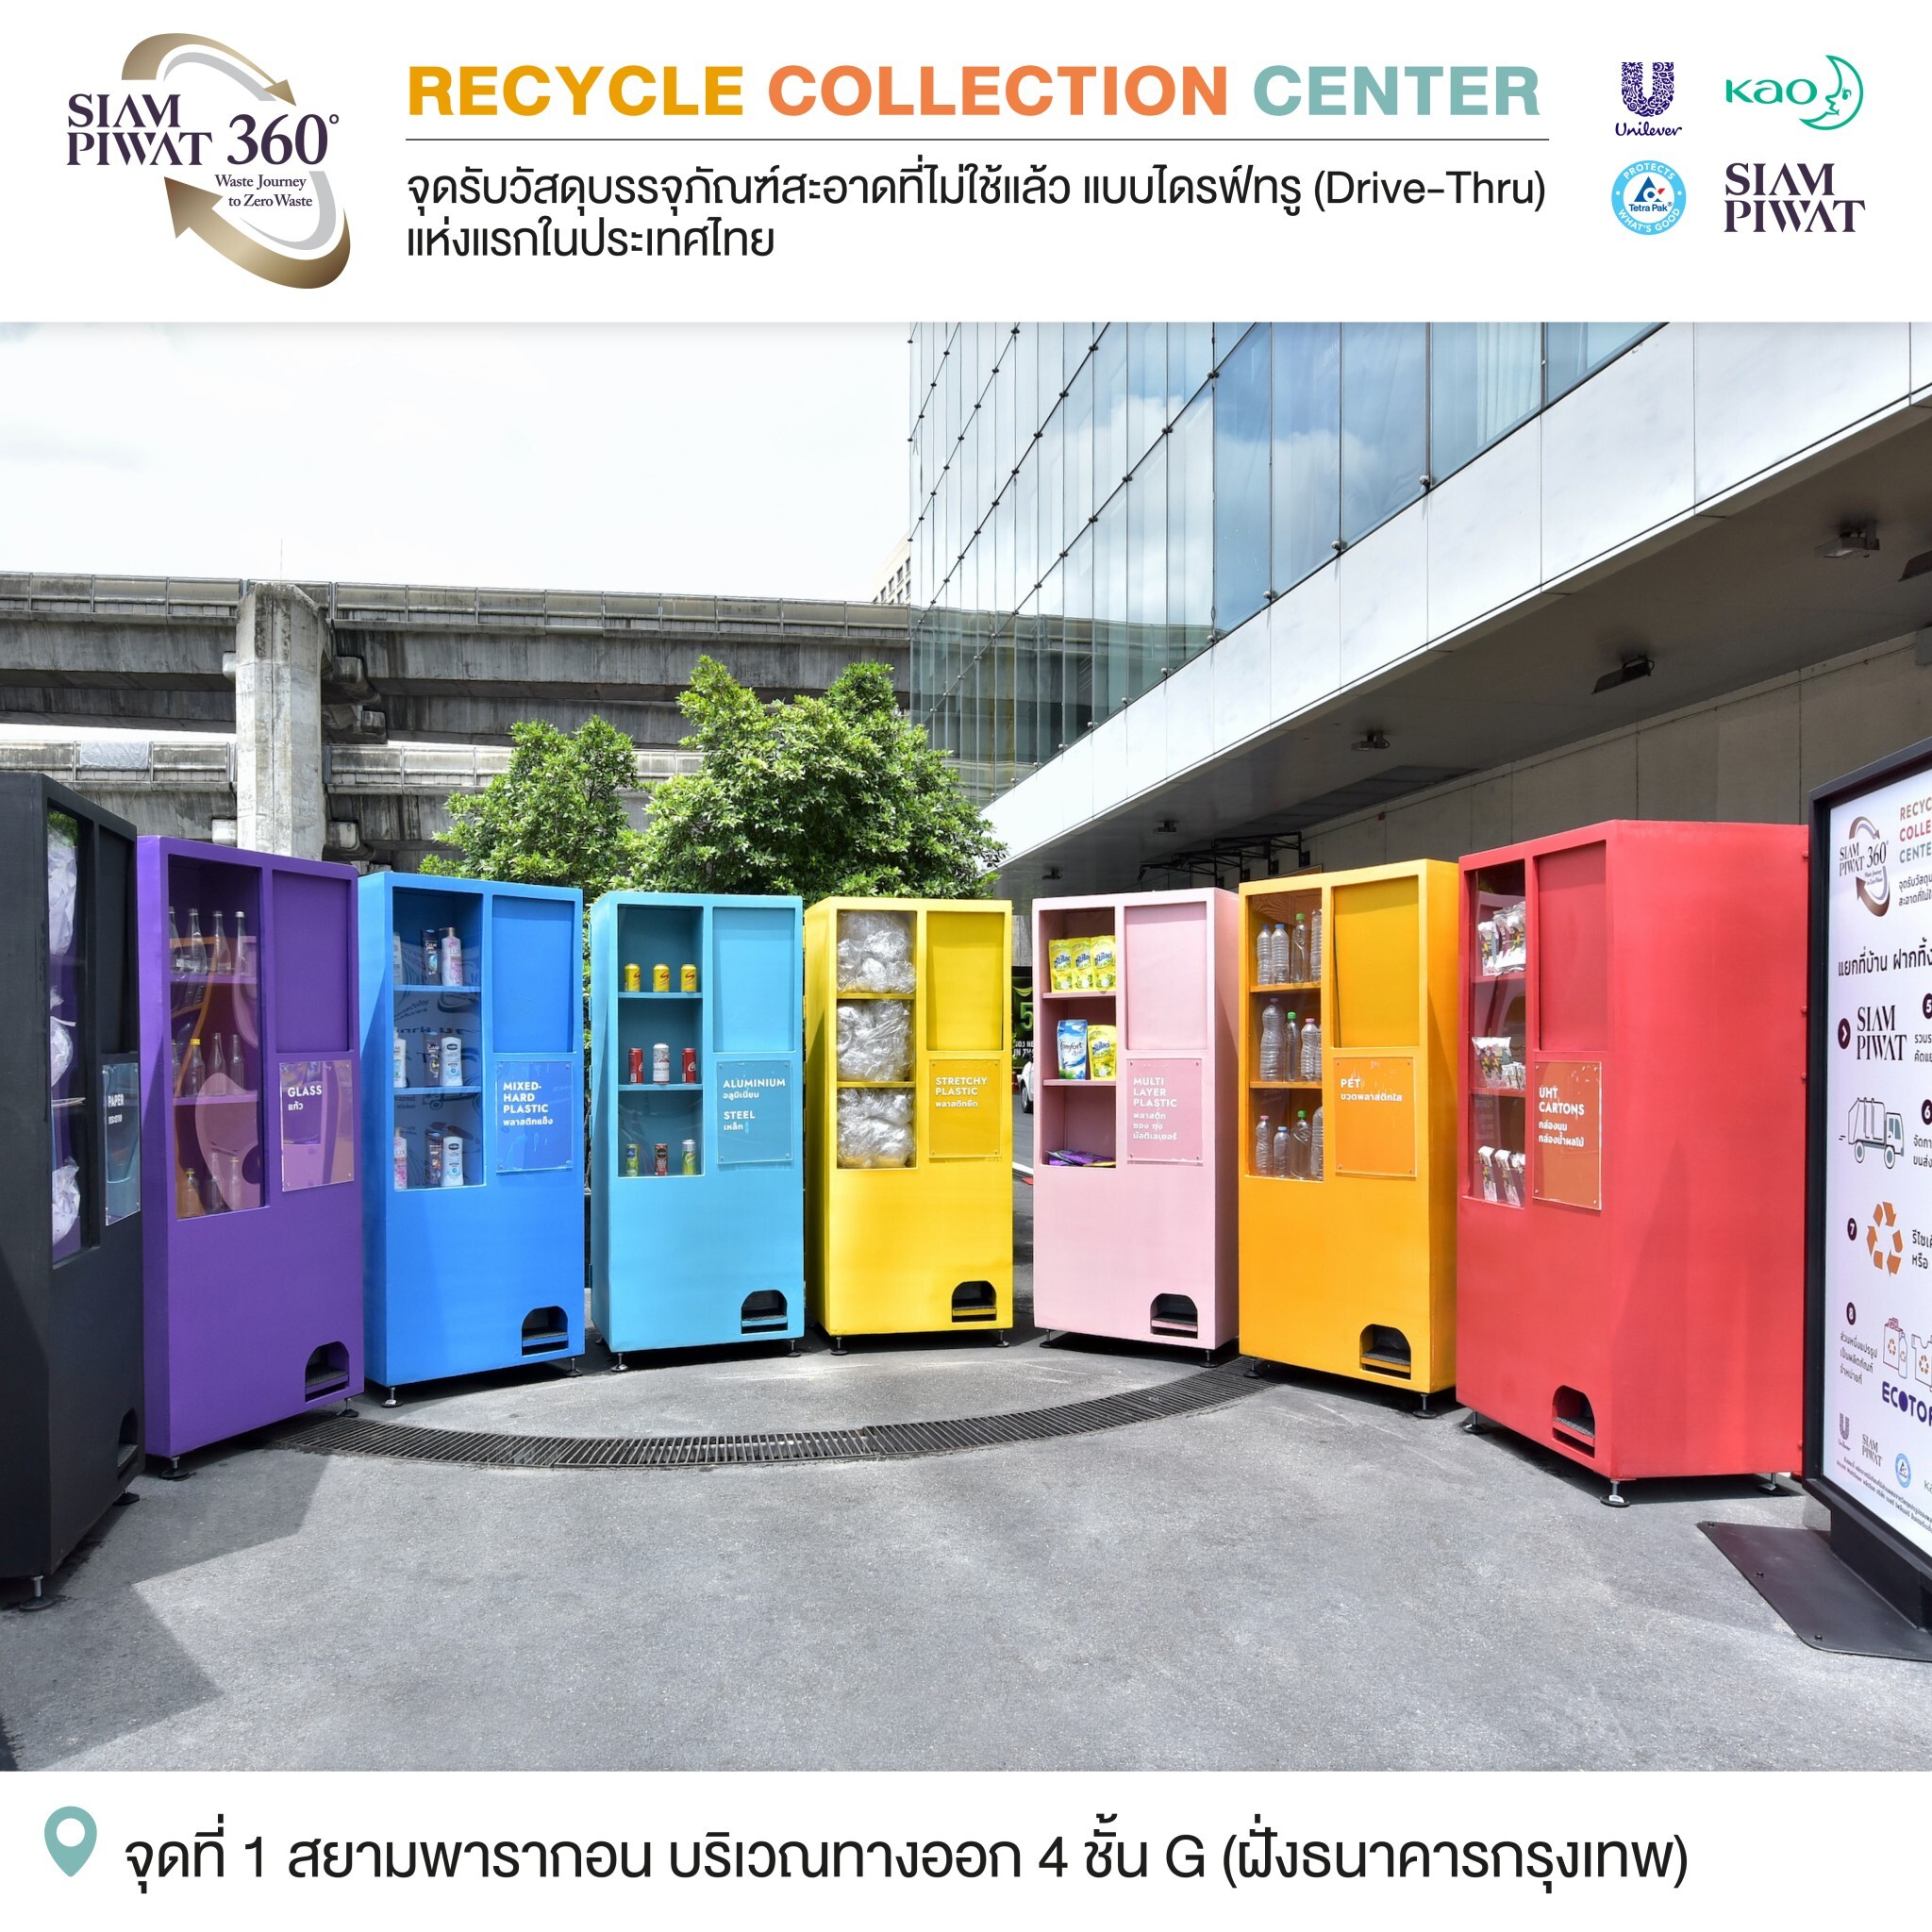 สยามพิวรรธน์จับมือพันธมิตร เปิดให้บริการ Recycle Collection Center แบบ Drive-Thru แห่งแรกในประเทศไทย